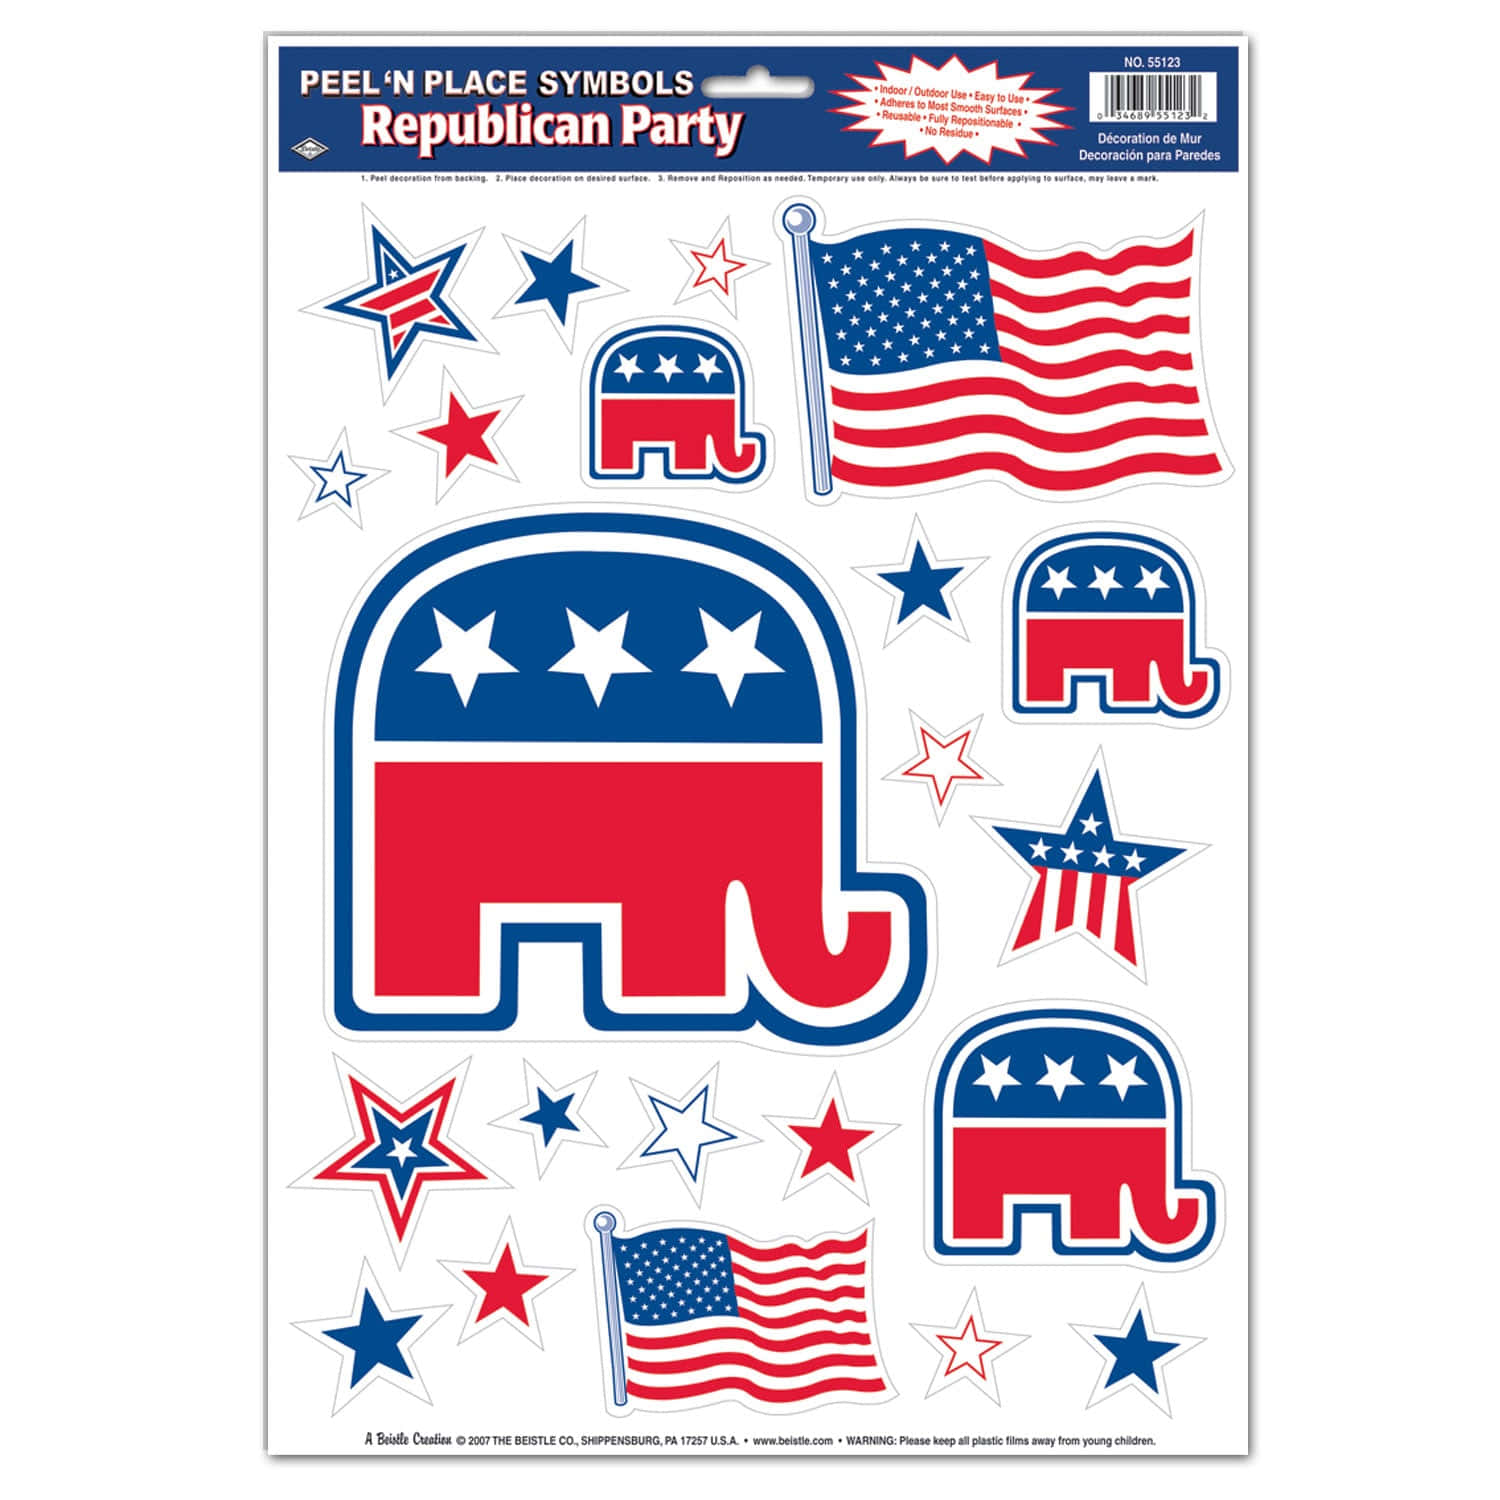 Republican Party Symbols Stickers Wallpaper